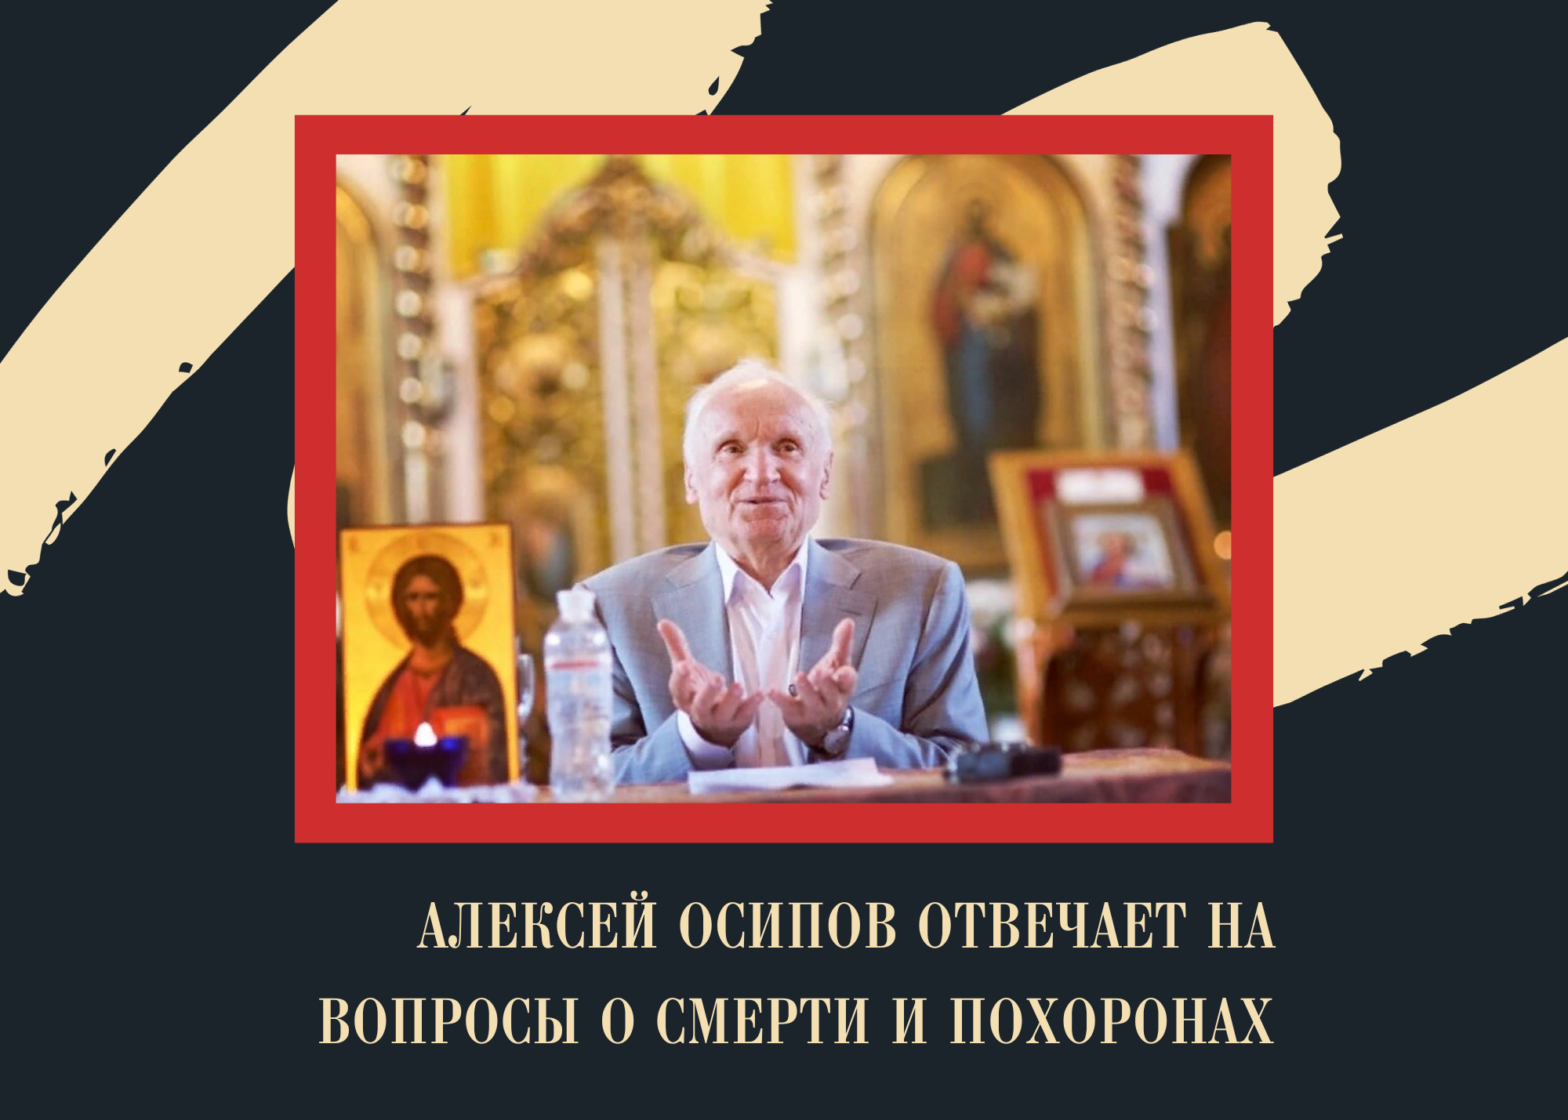 Алексей Осипов отвечает на вопросы о смерти и похоронах